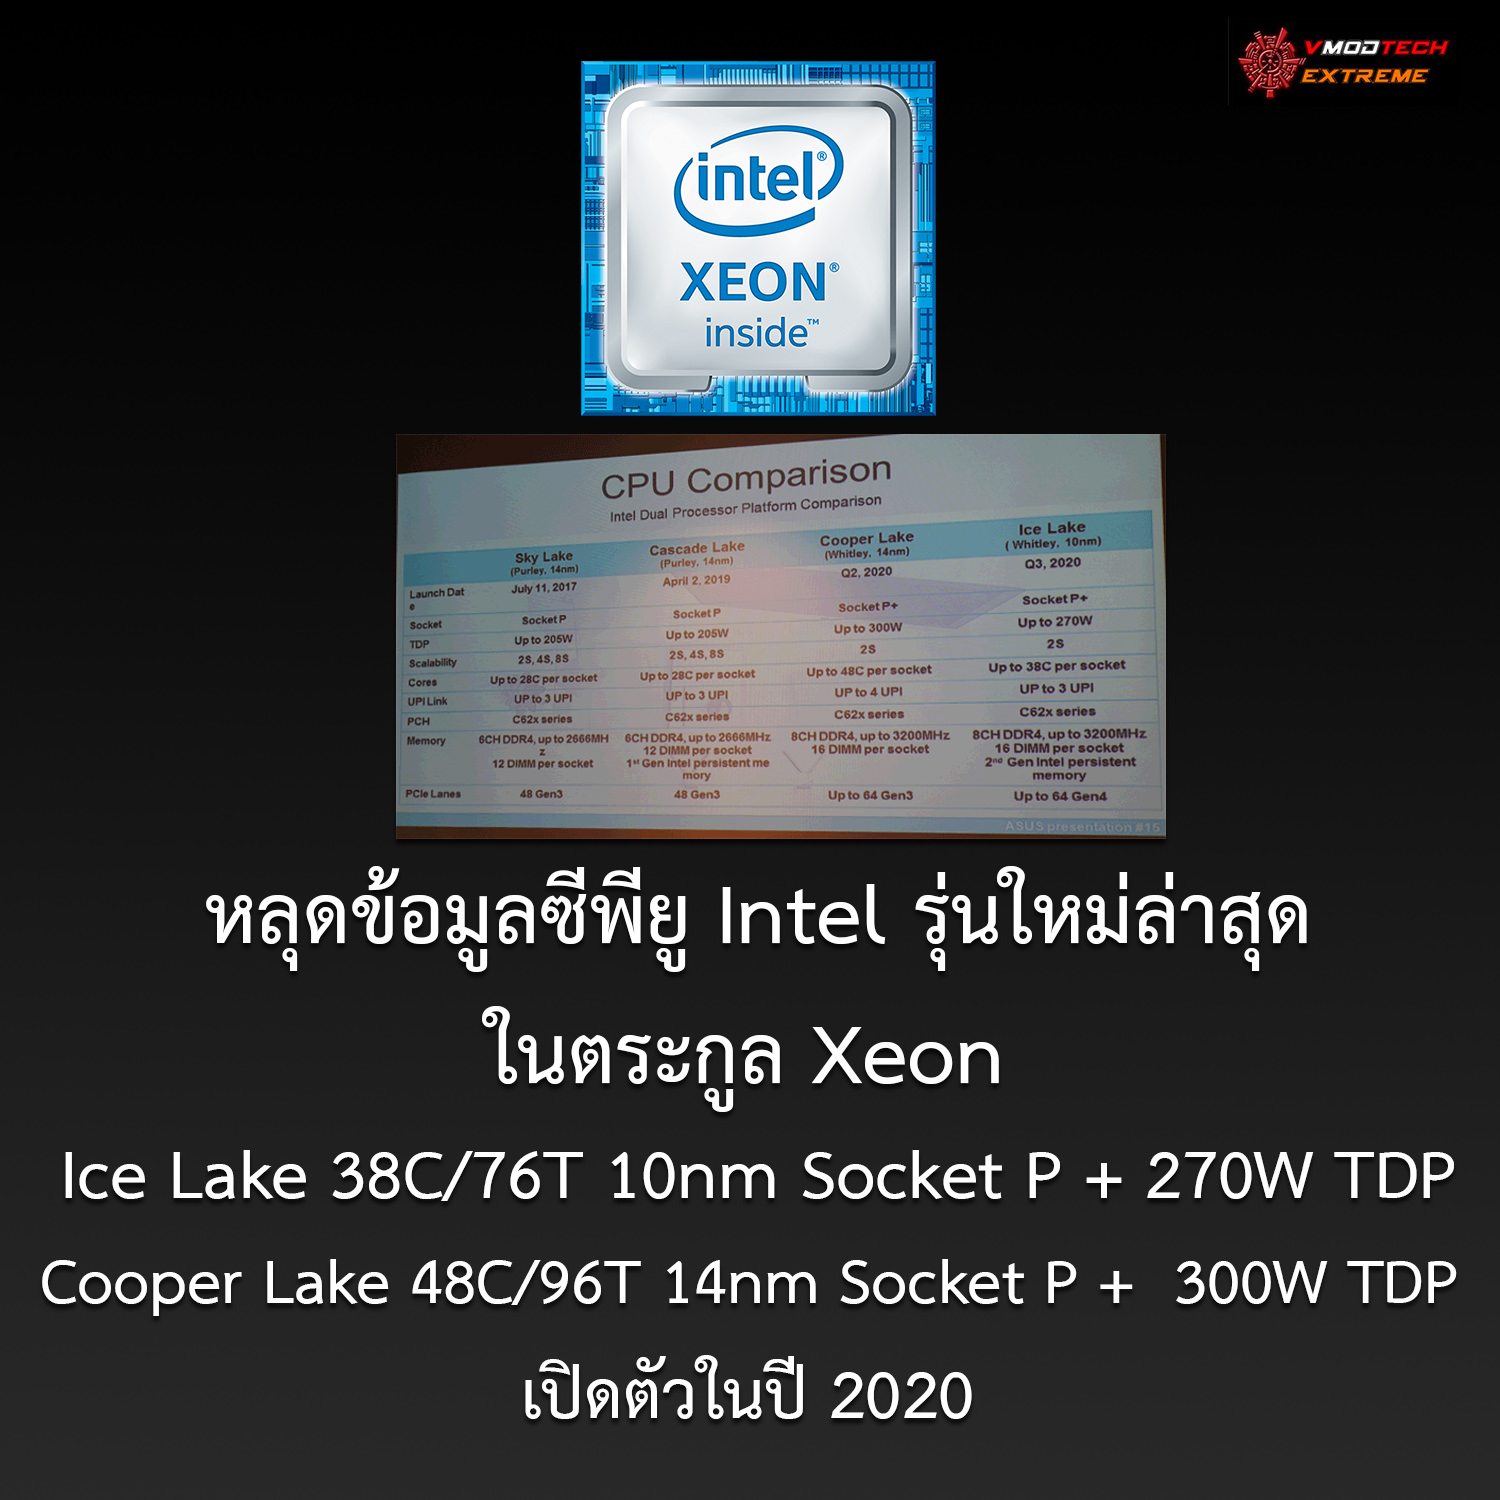 intel ice lake cooper lake 2020 หลุดข้อมูลซีพียู Intel รุ่นใหม่ล่าสุดในรหัส Ice Lake จำนวนคอร์ 38C/76T ขนาด 10nm และ Cooper Lake 48C/96T ขนาด 14nm เปิดตัวในปี 2020 